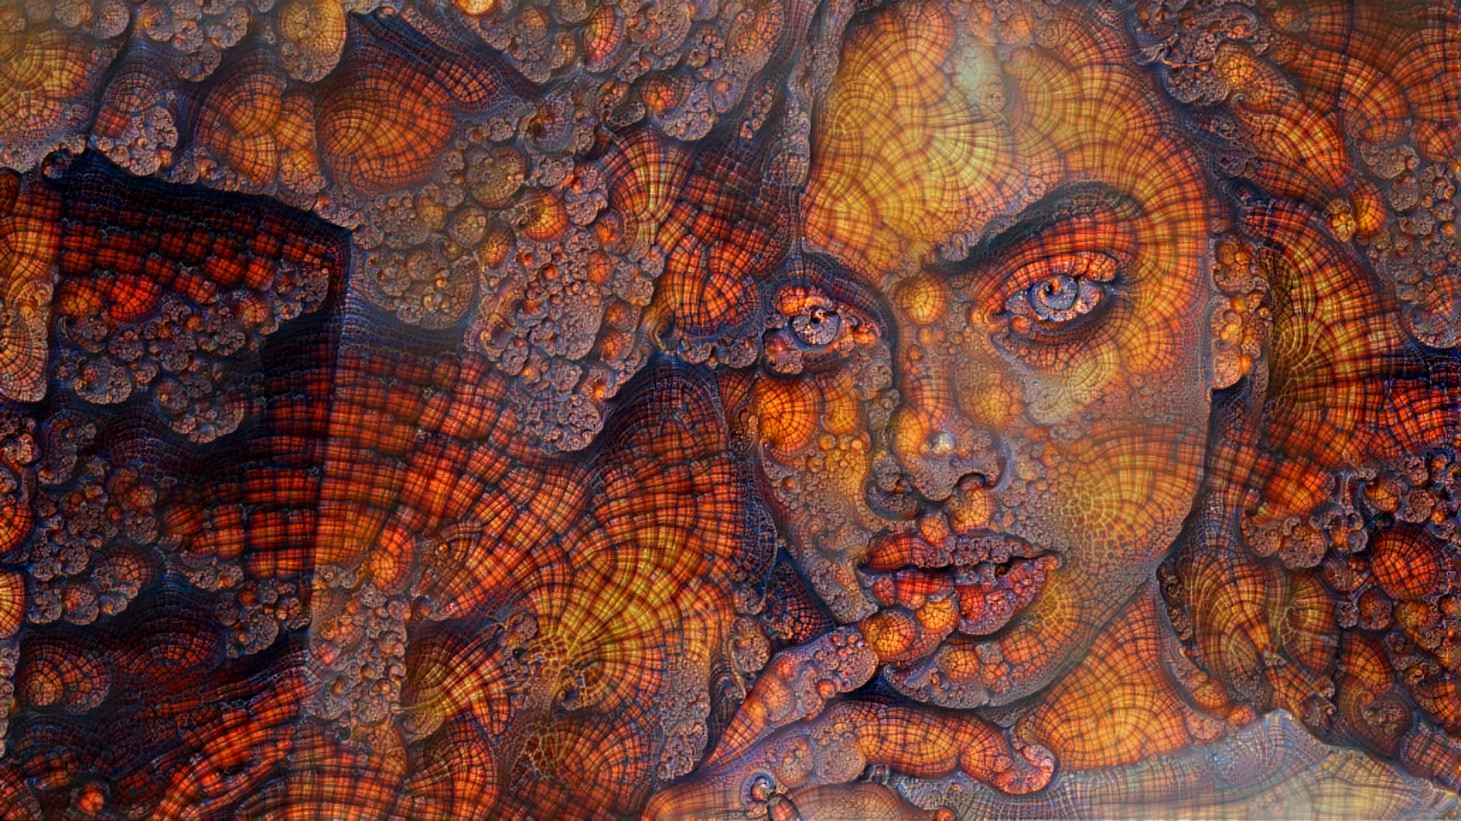 yael shelbia touching lip, orange fractal